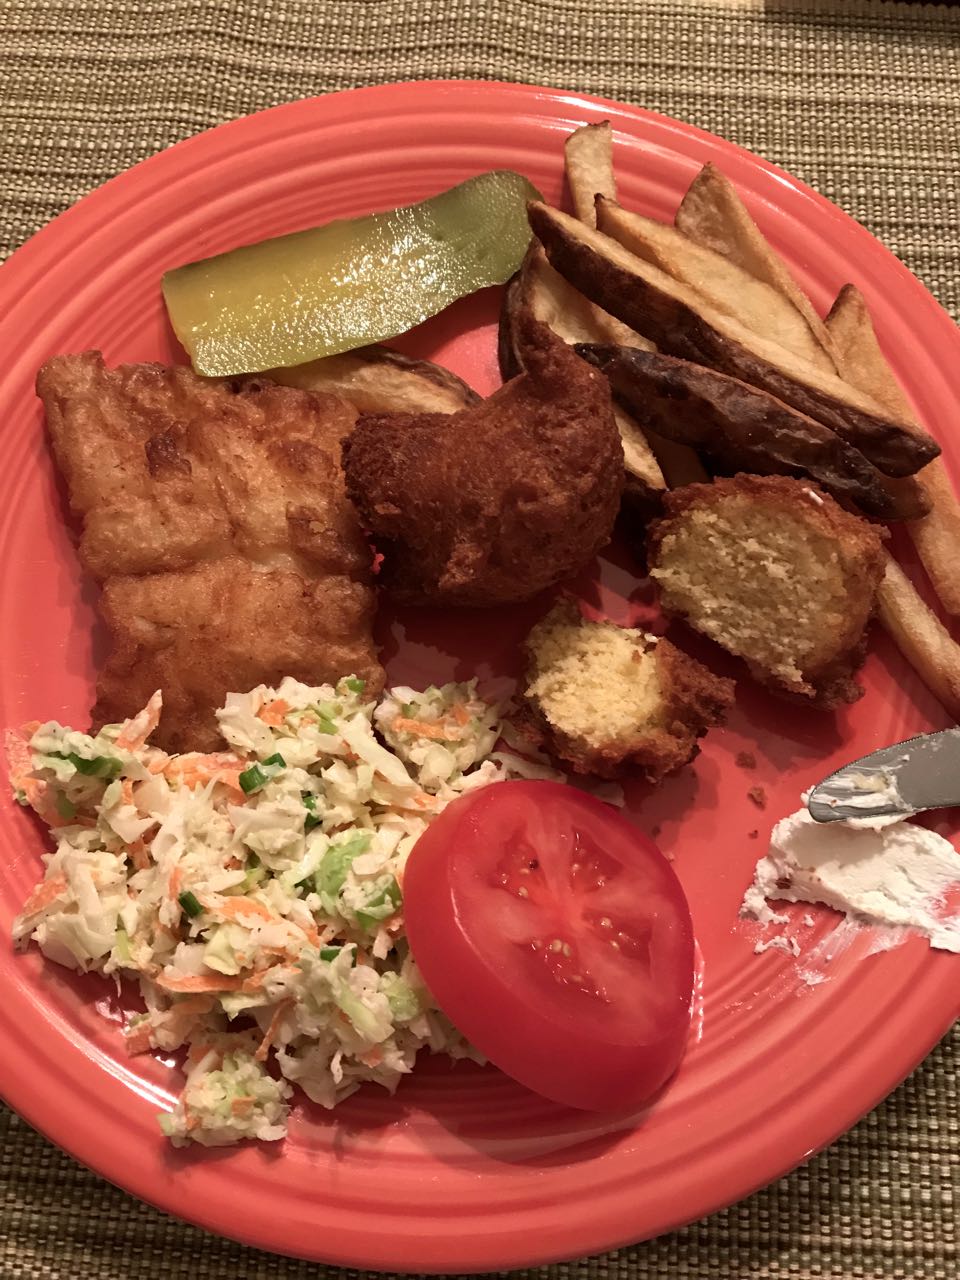 Plate of fried food.jpg